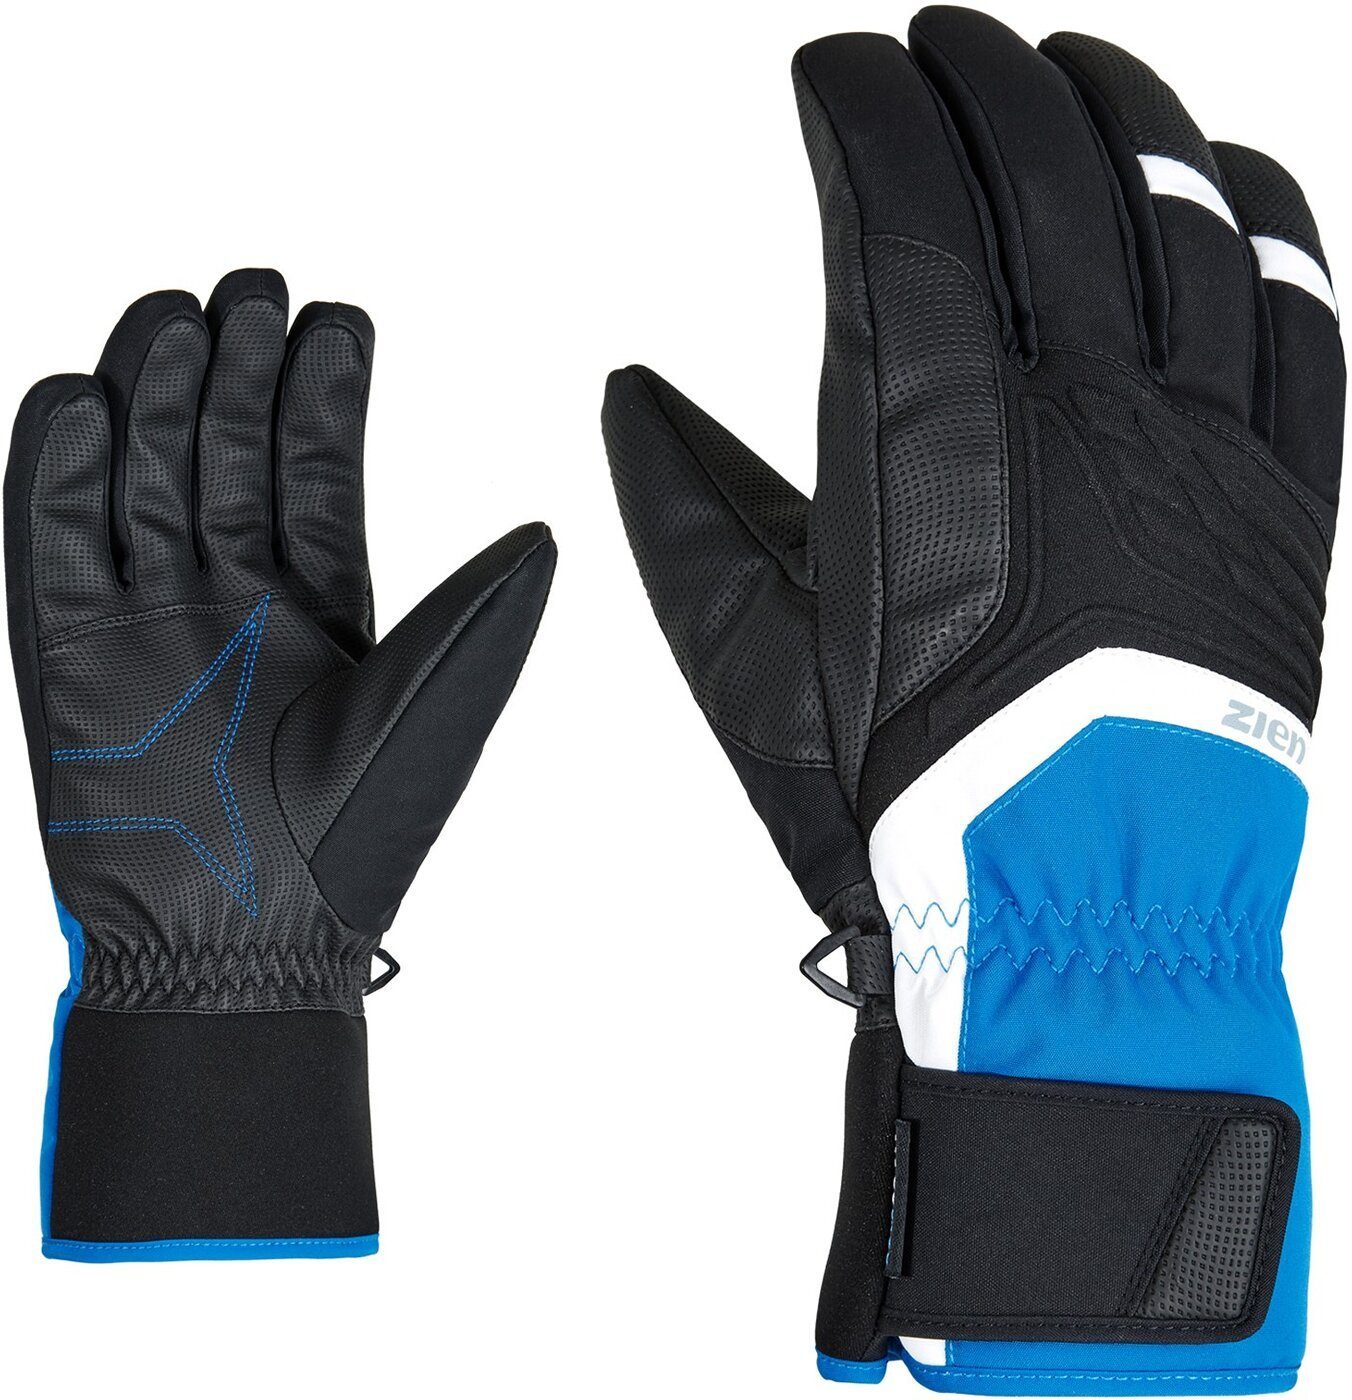 Ziener Fleecehandschuhe glove black.persian AS(R) blue 12798 GALVIN ski alpine